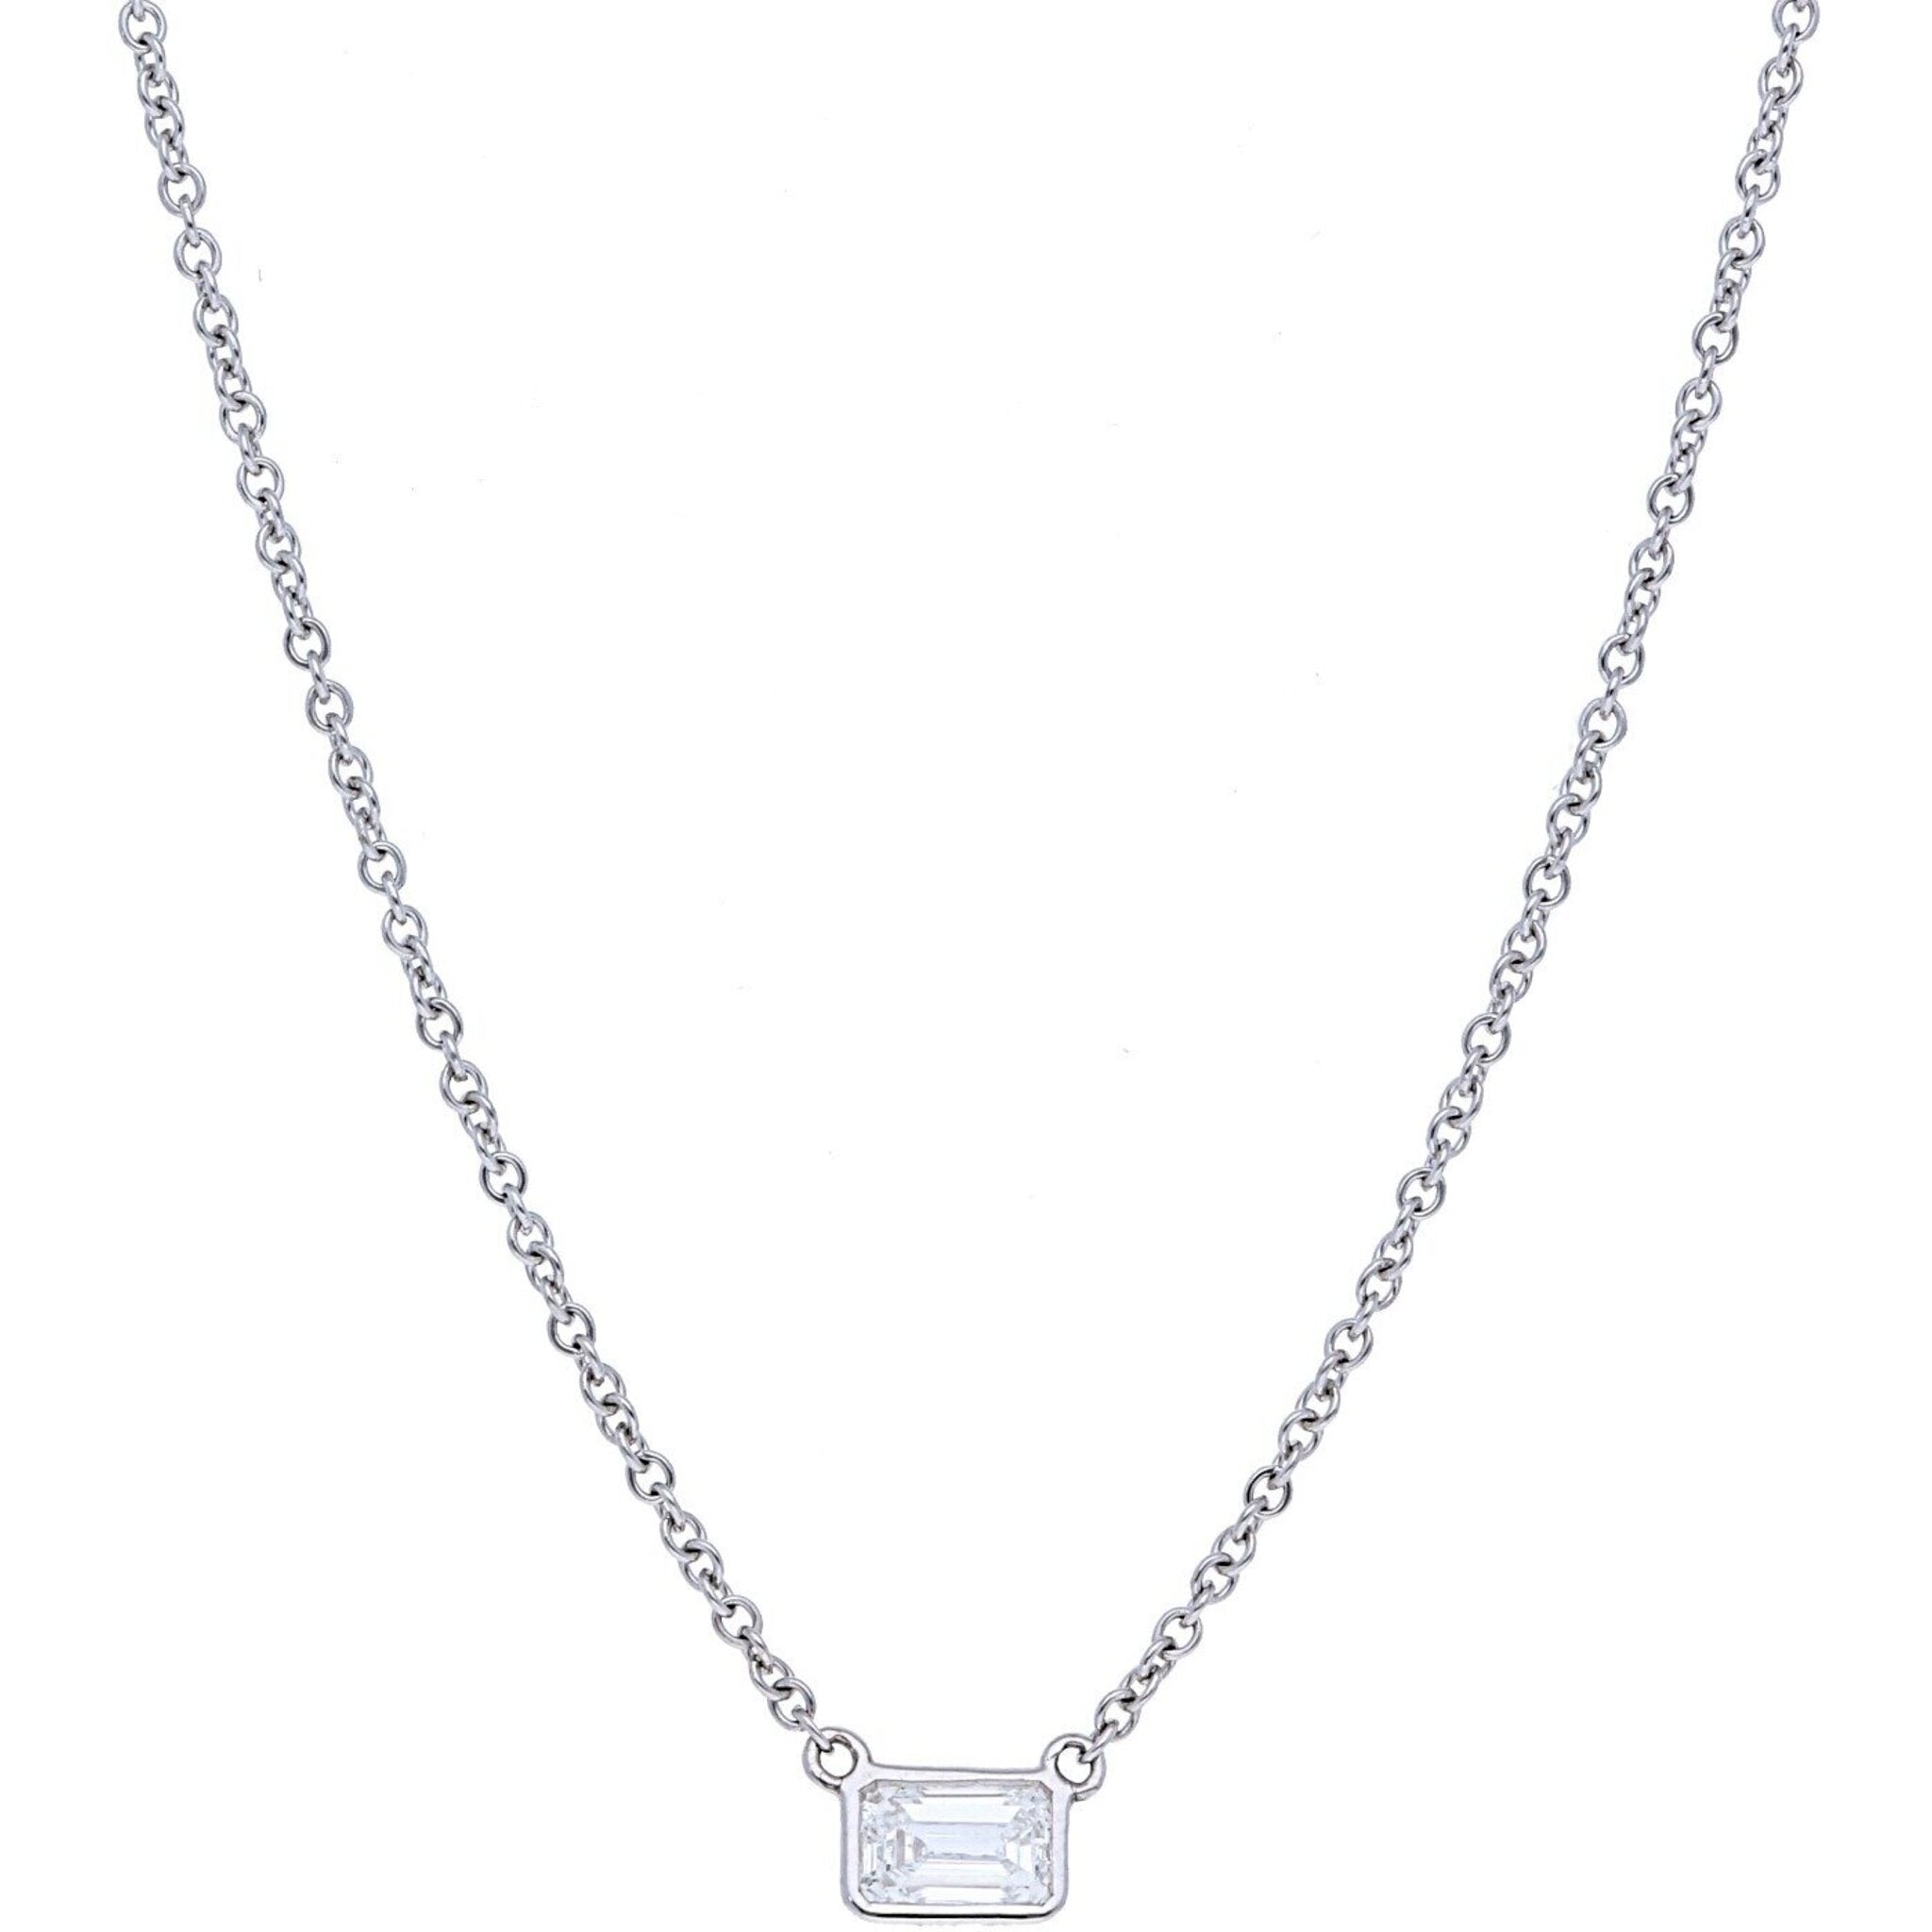 Prong or Bezel Set Diamond Solitaire Pendant Necklace – deBebians